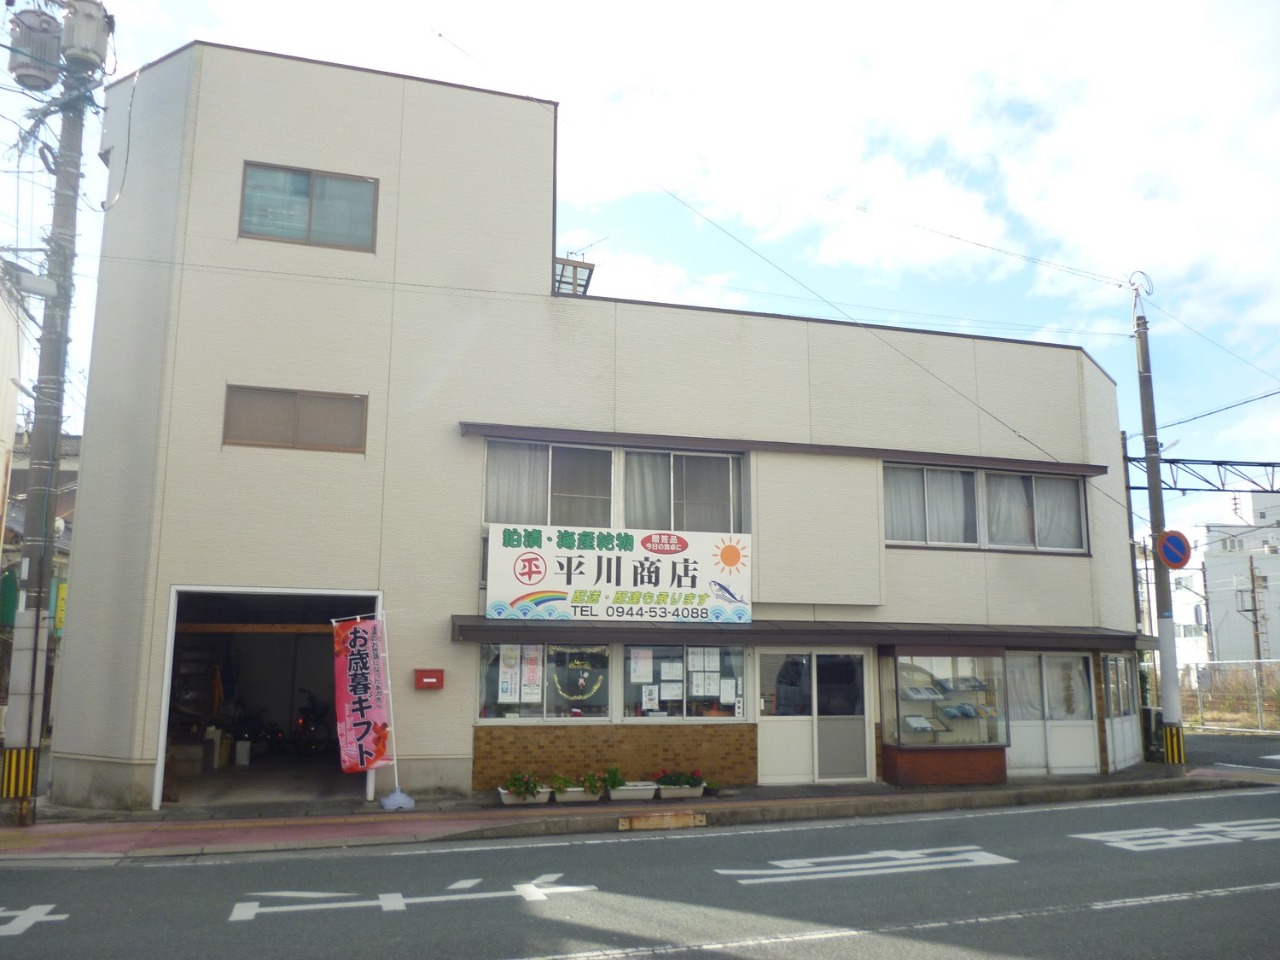 平川商店の外観の画像